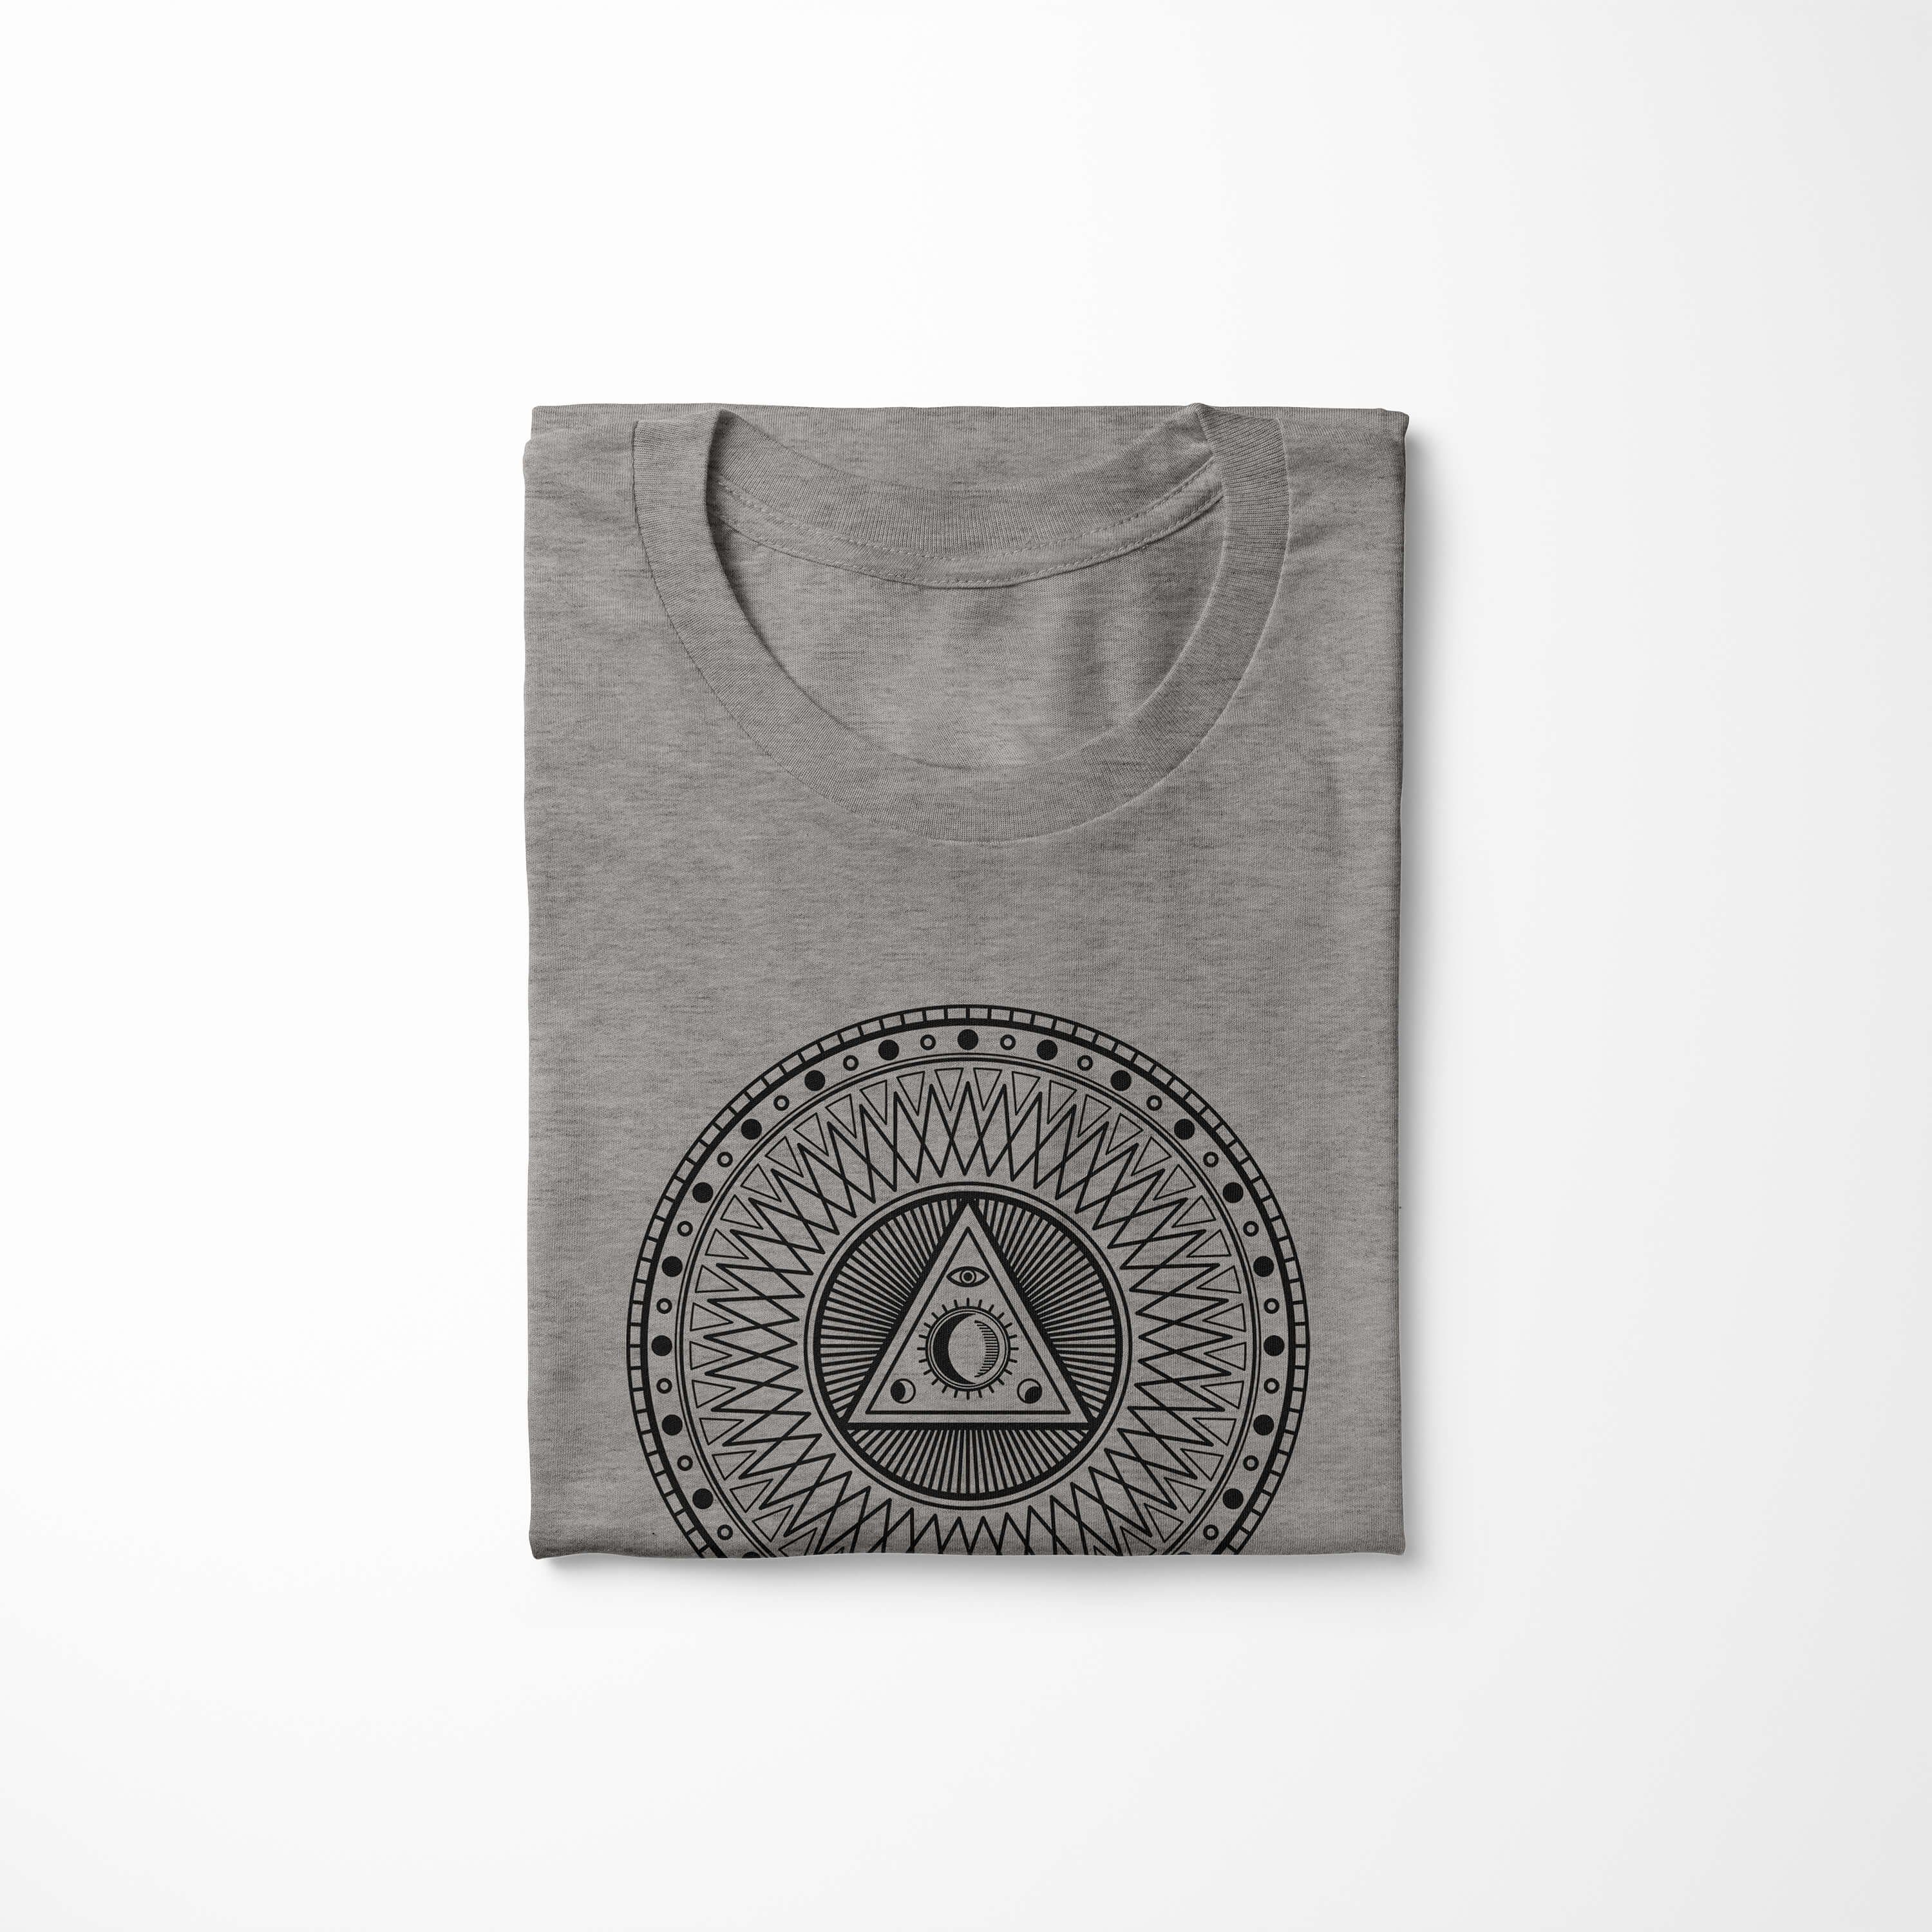 Ash angenehmer Art Serie Premium feine Alchemy No.0032 Symbole Struktur T-Shirt Tragekomfort T-Shirt Sinus